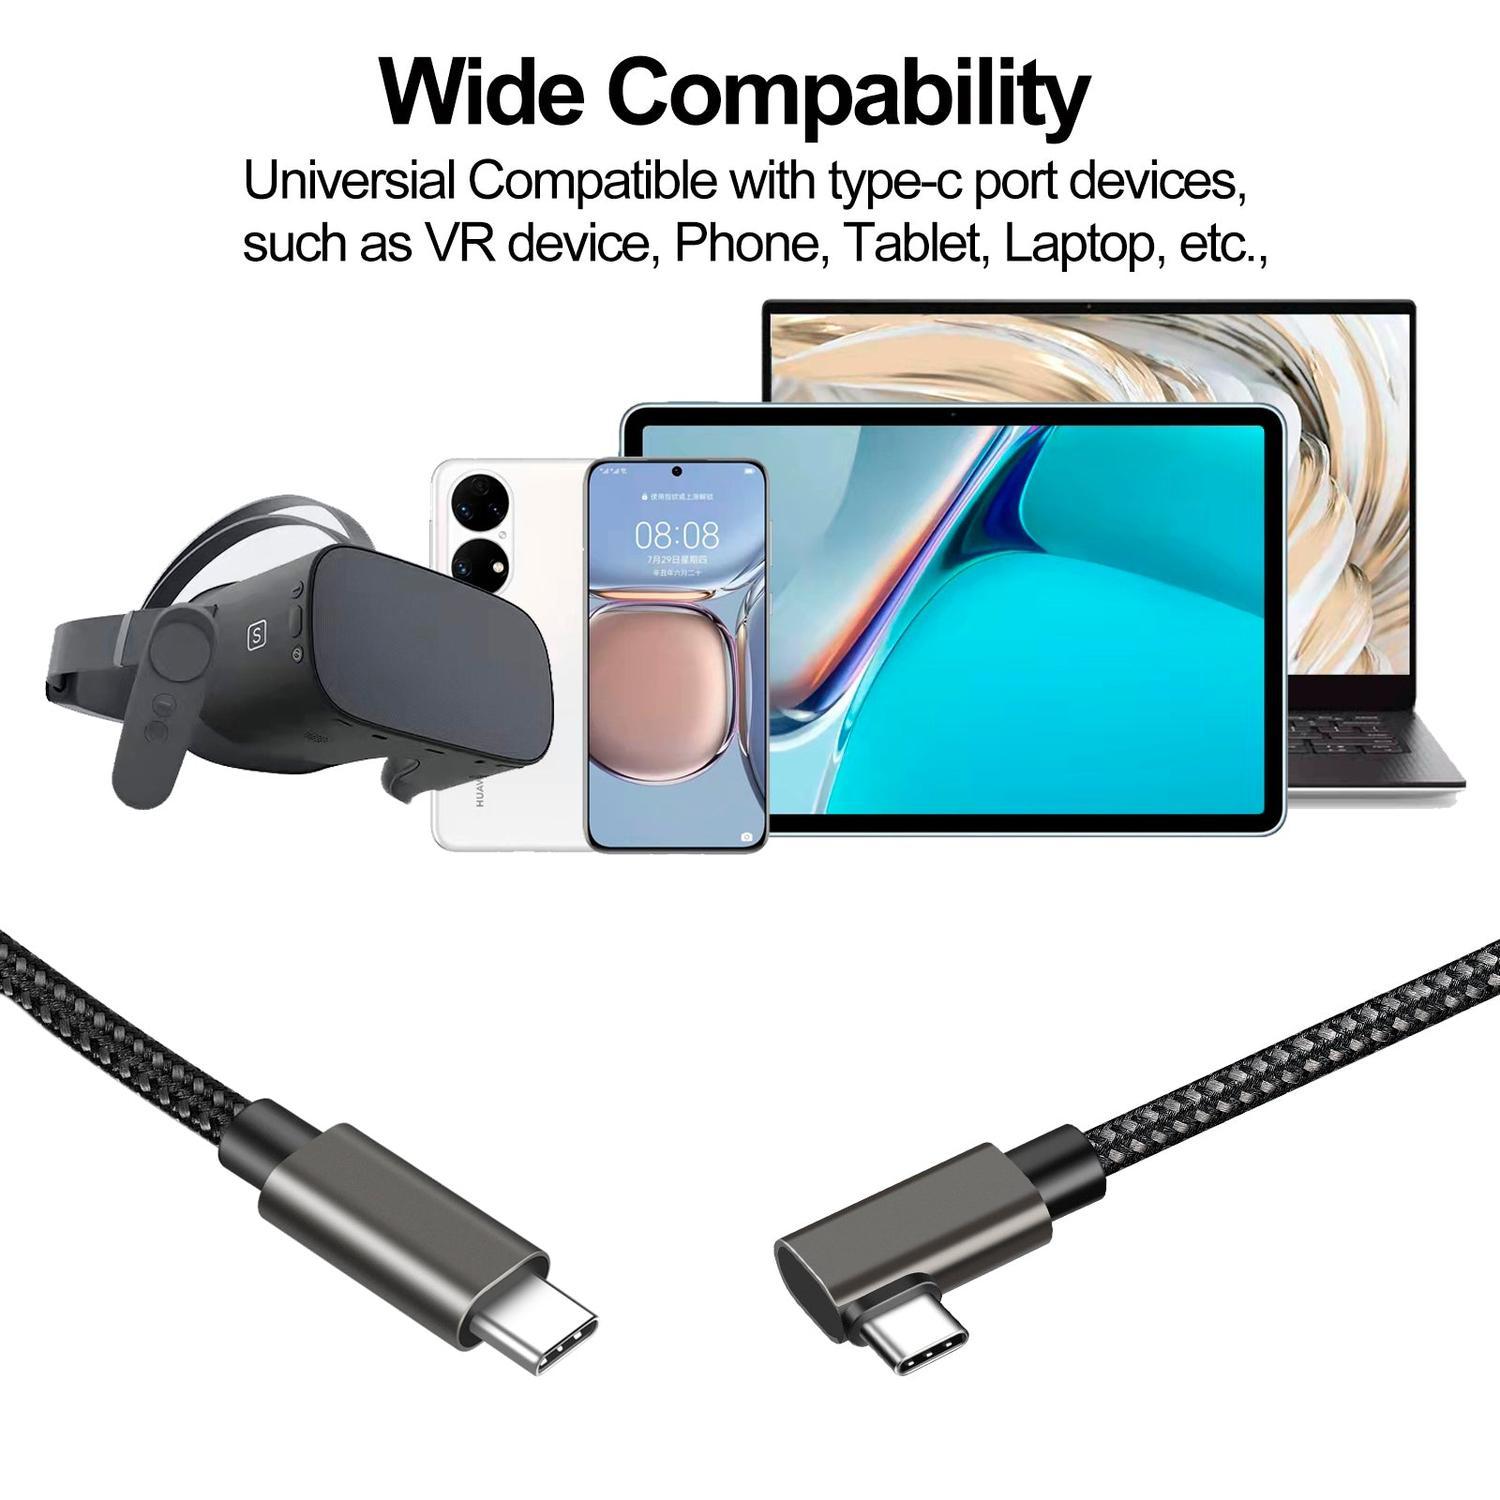 NÖRDIC VR Link-kabel 5m USB3.2 Gen1 USB-C til C 5Gbps 3A hurtiglading Oculus Quest 2 Super Speed USB Link-kabel